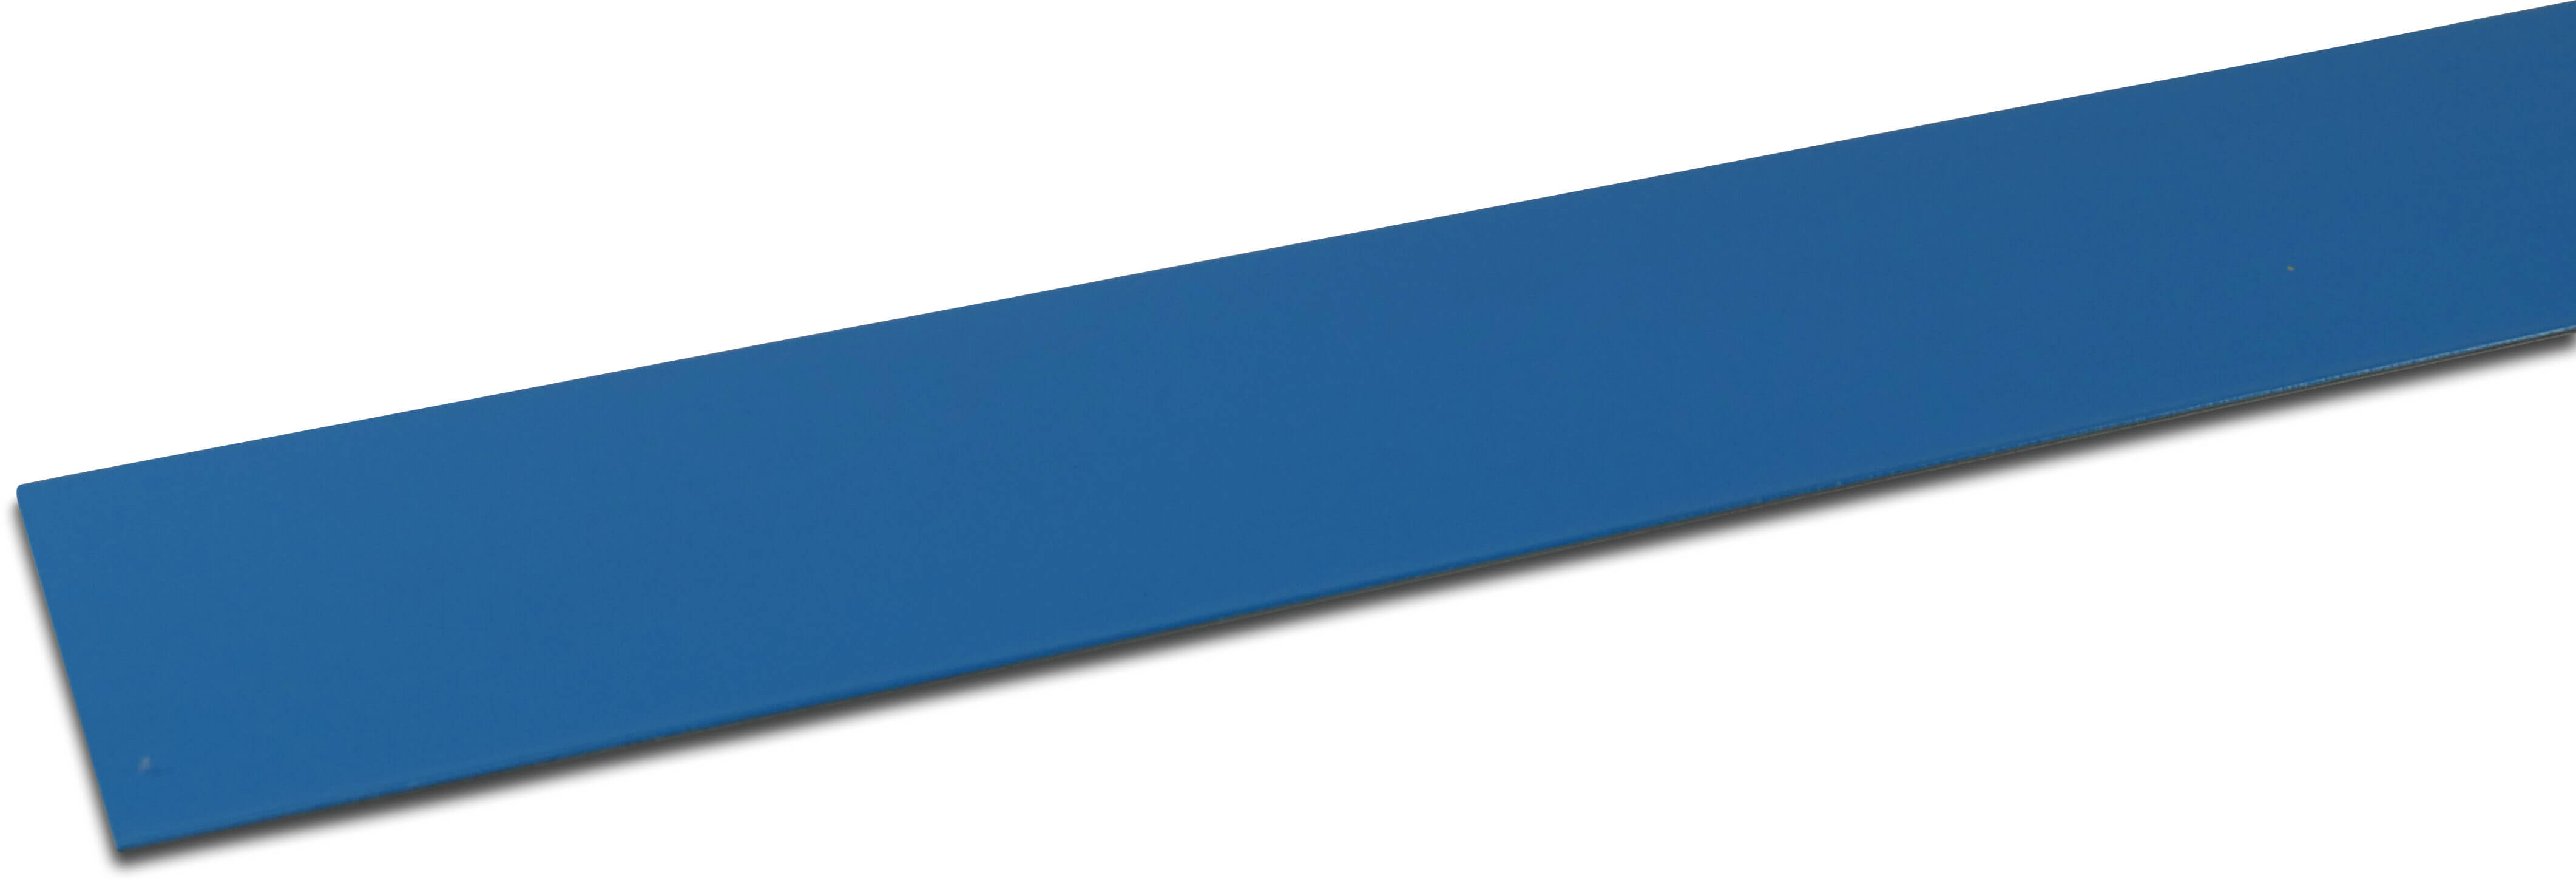 Elbe Profil PVC beschichtet Metal 50 mm x 50 mm x 2000 mm Blau 2m type Innenwinkel